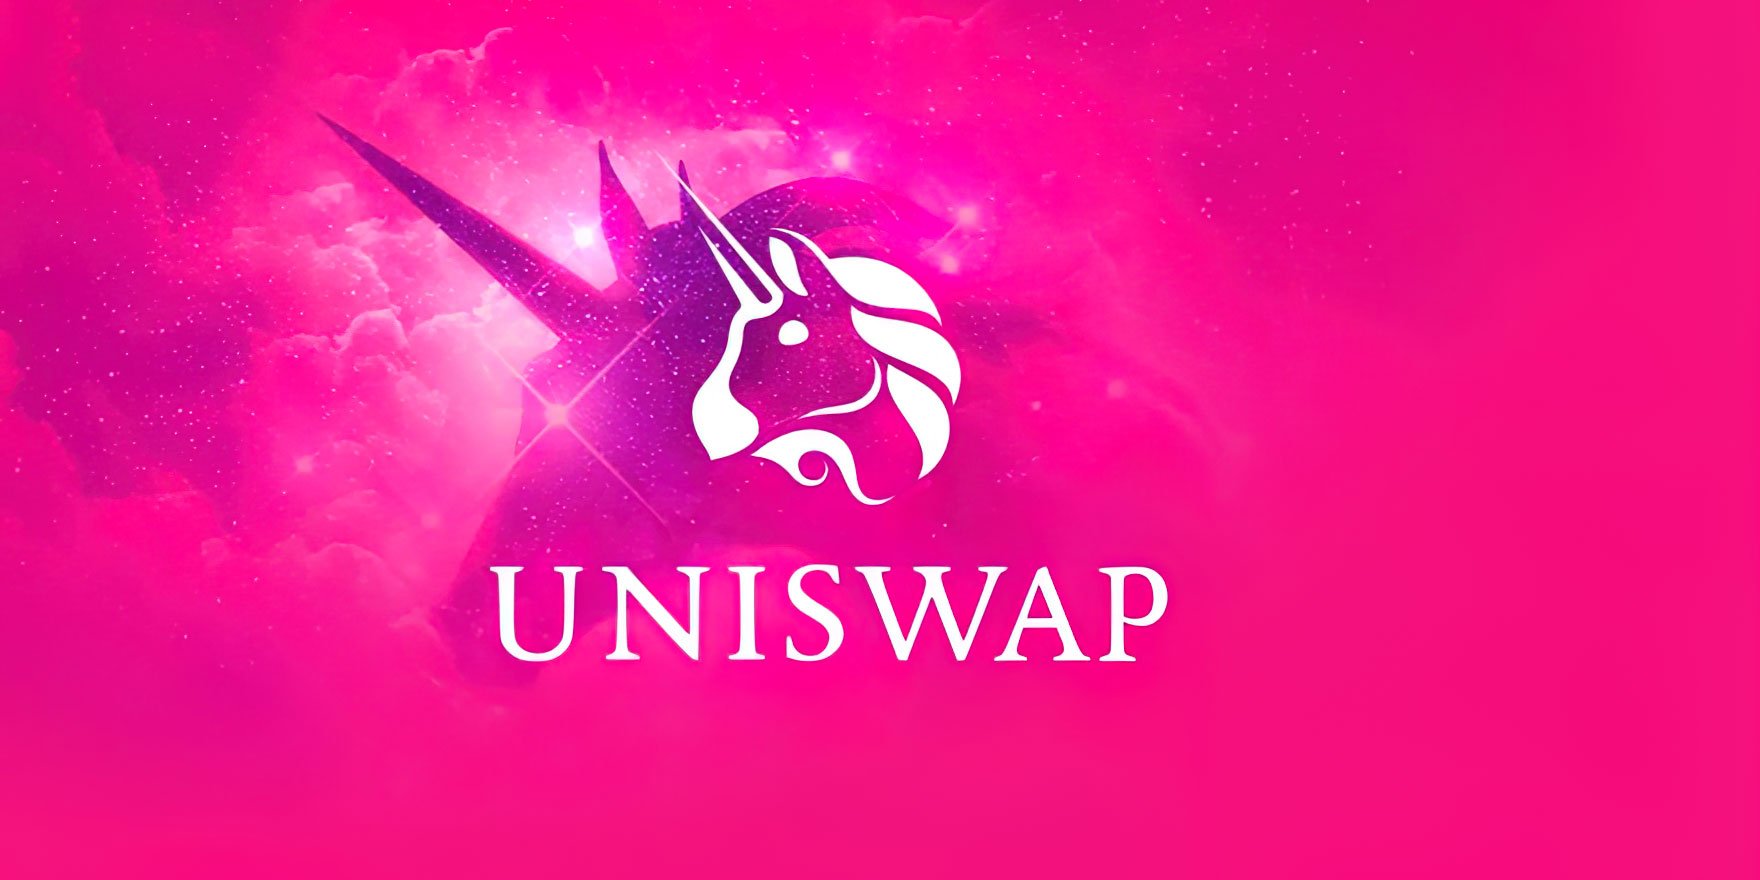 Децентрализованная биржа Uniswap перешагнула отметку суммарного объема торгов в $1 триллион